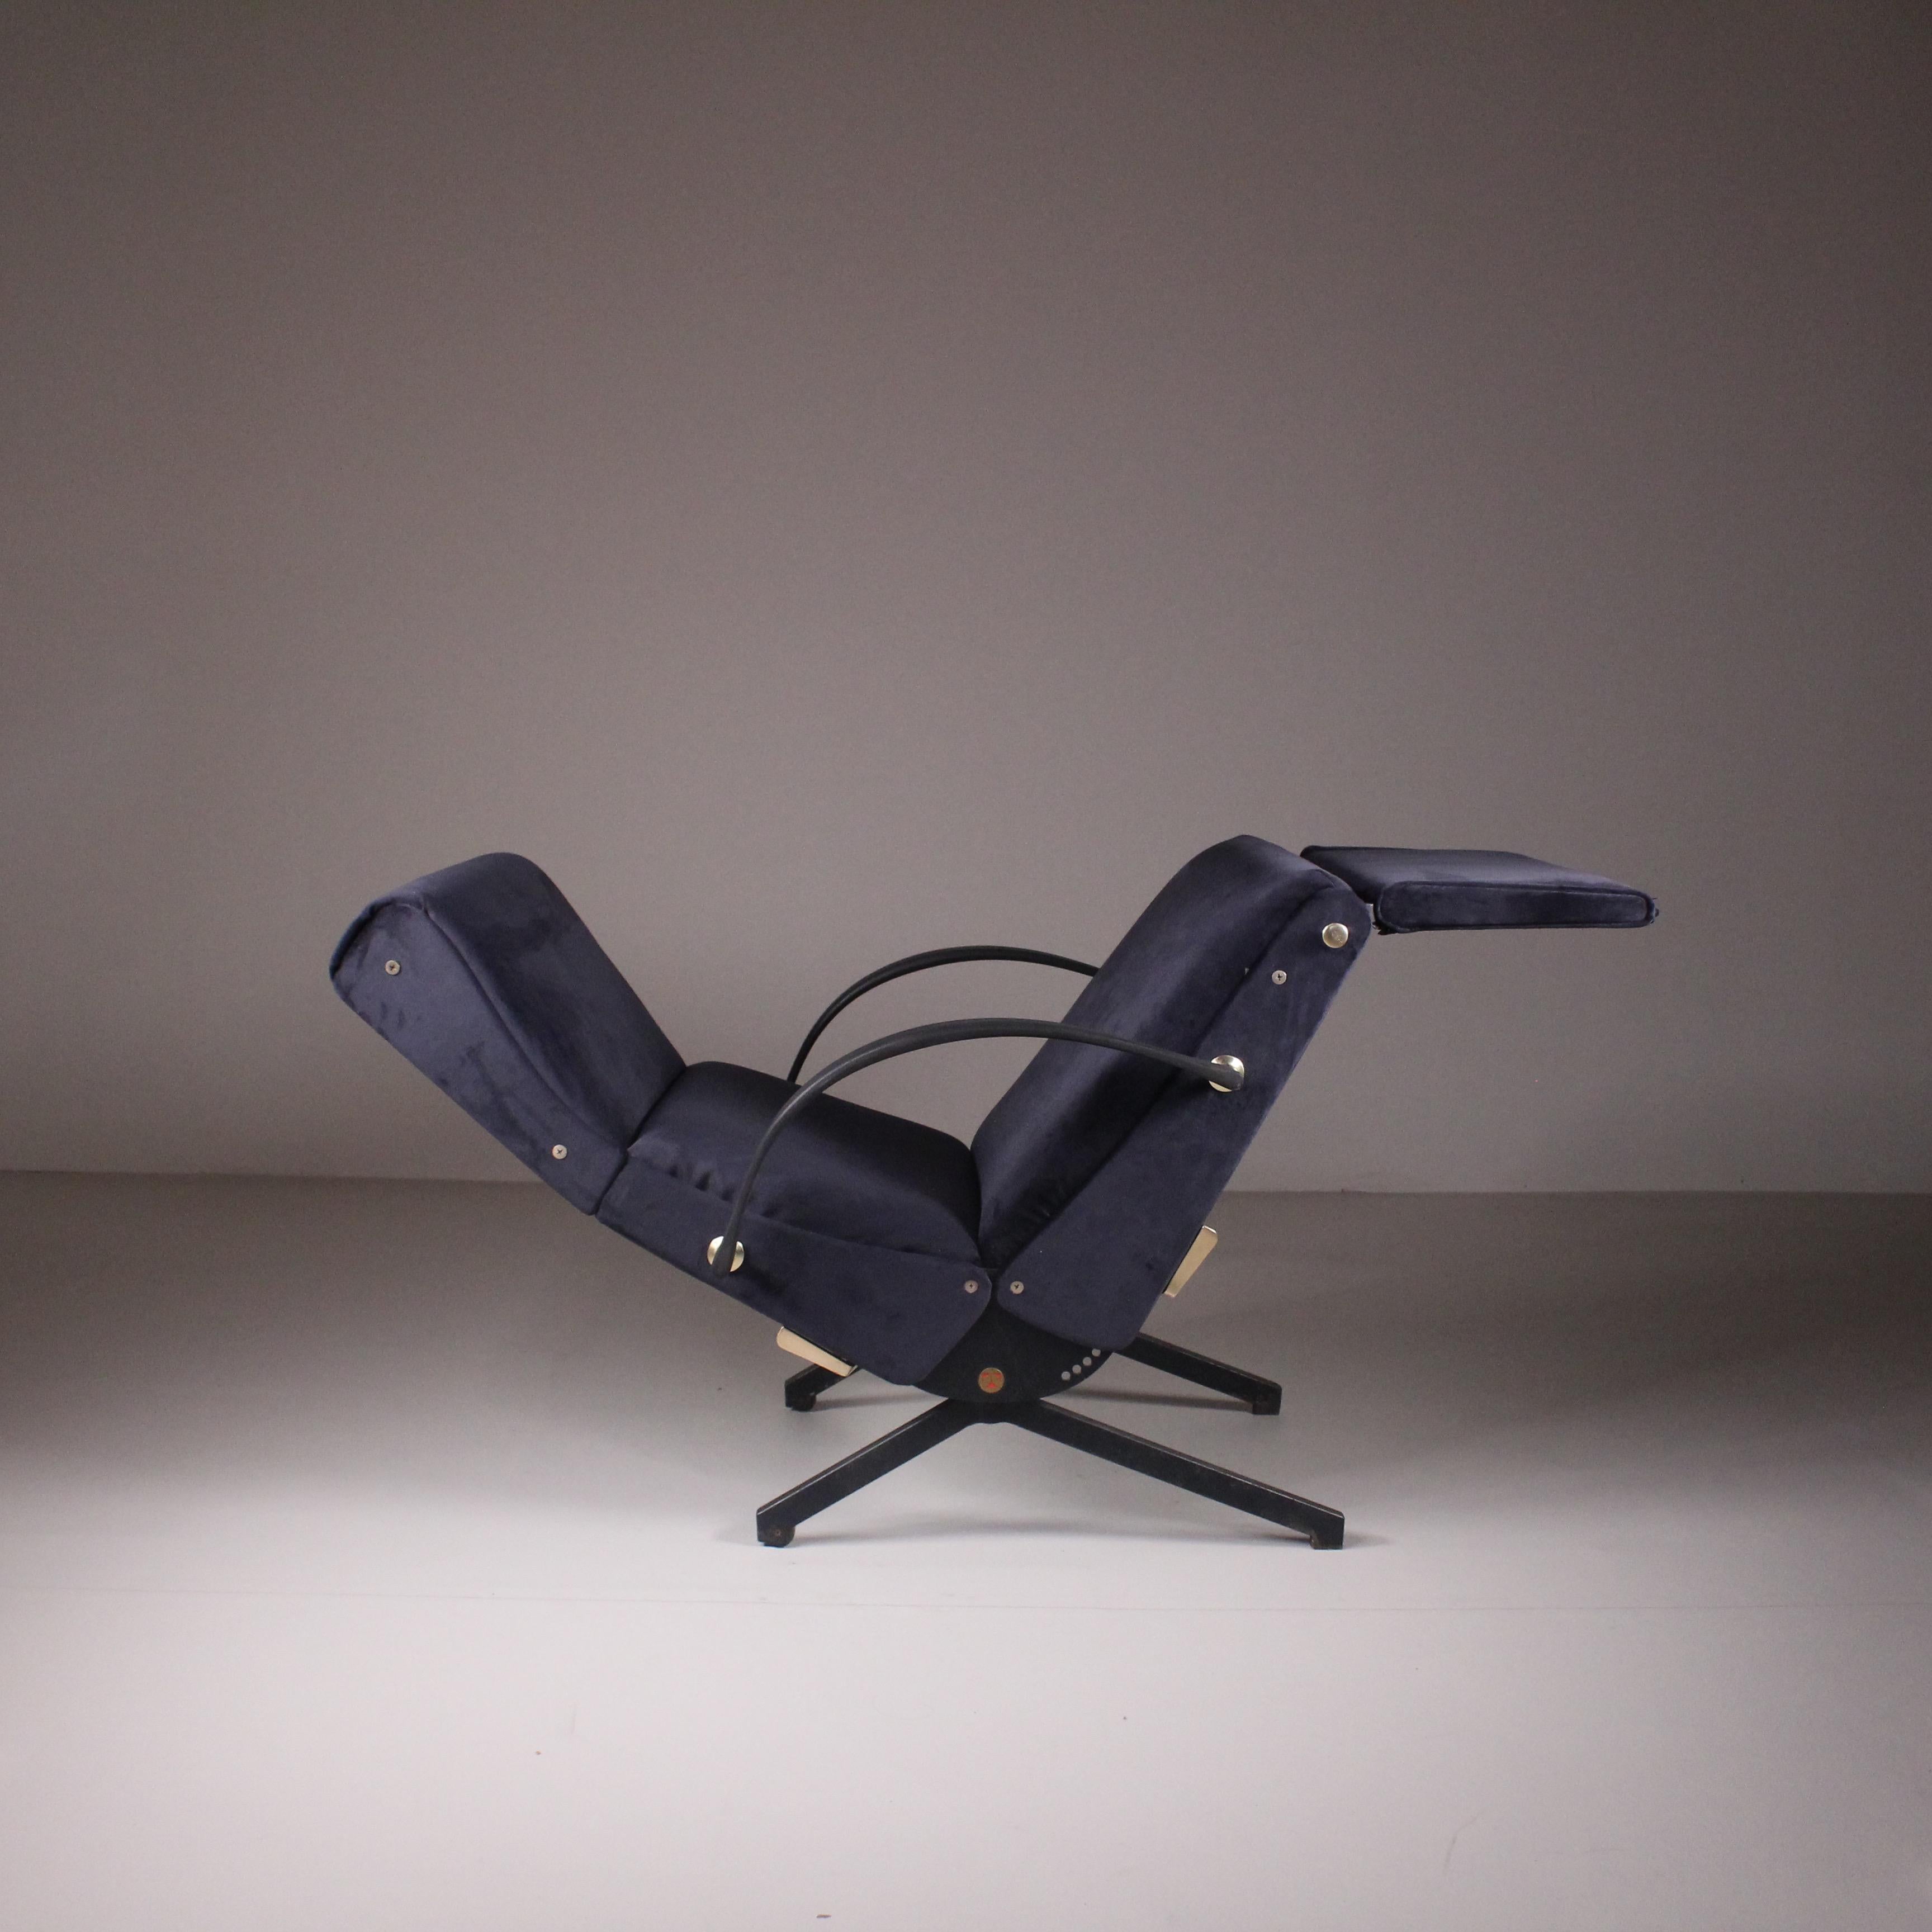 Fauteuil P40, Osvaldo Borsani, Tecno, années 1950. Un fauteuil innovant d'Osvaldo Borsani, équipé d'une technologie avancée pour maximiser les possibilités de la chaise longue classique. Tecno a relevé le défi de créer un fauteuil compact mais